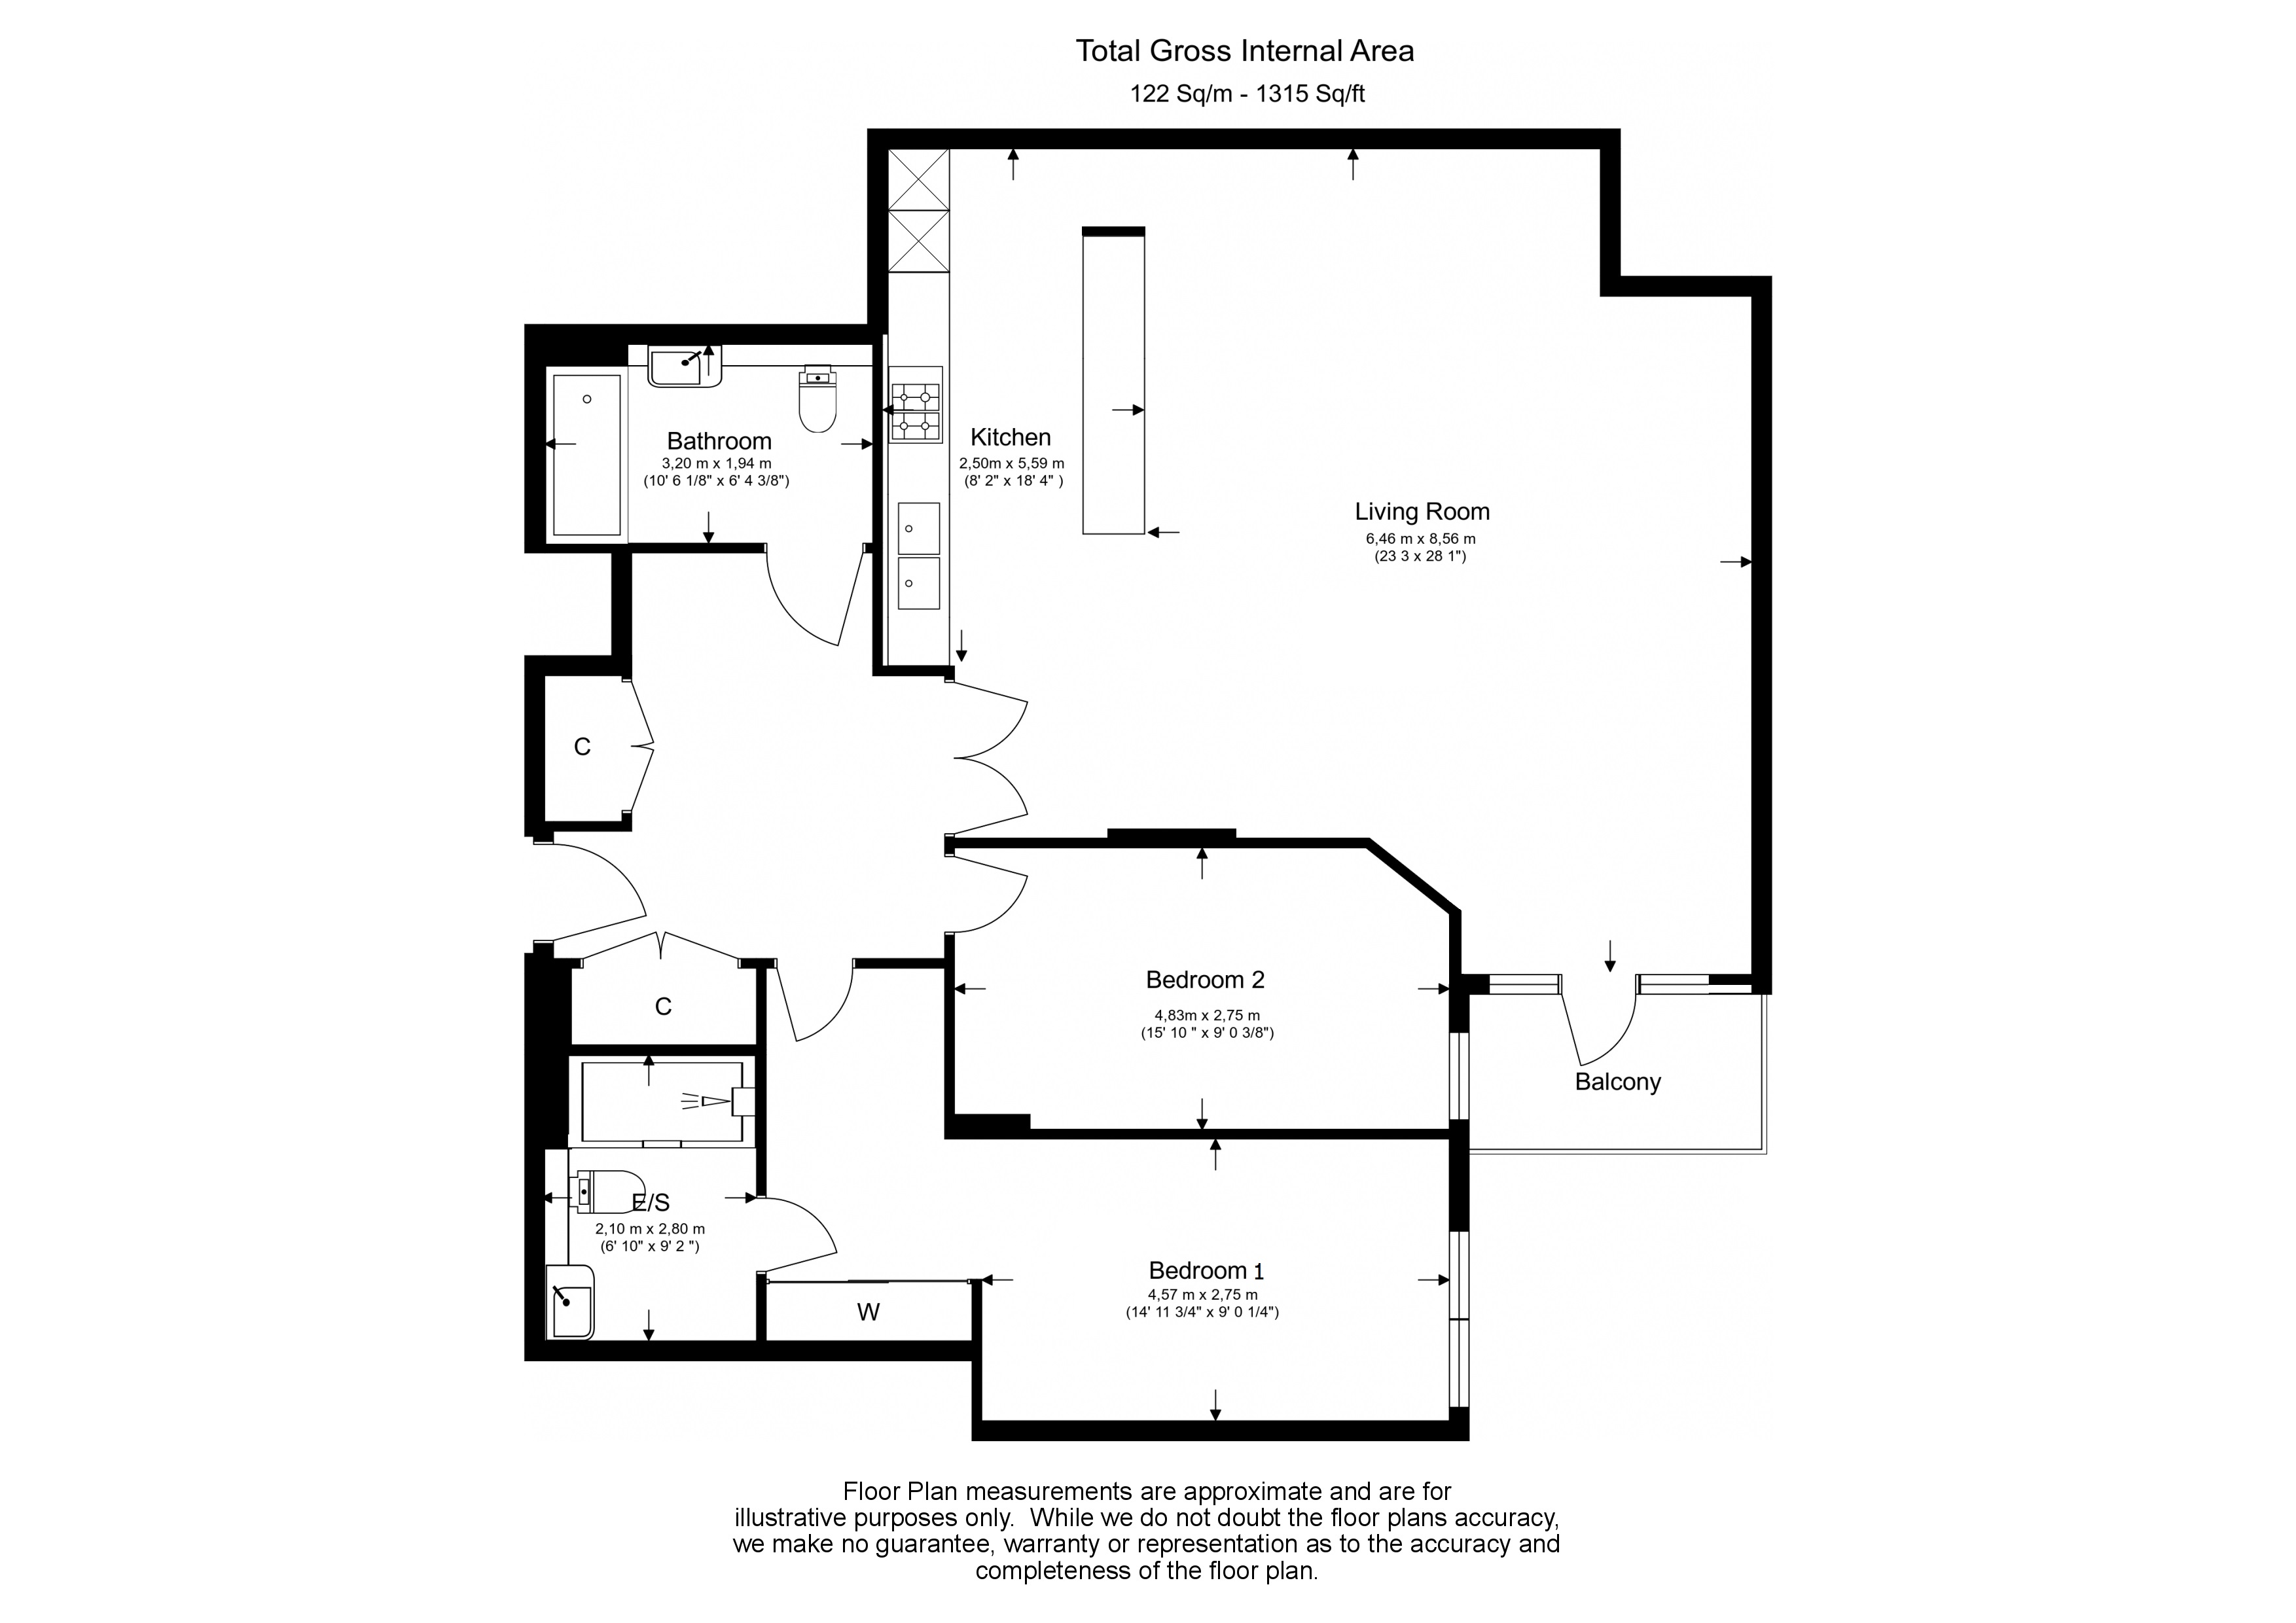 2 bedrooms apartments/flats to sale in Kew Bridge Road, Brentford, London-Floorplan